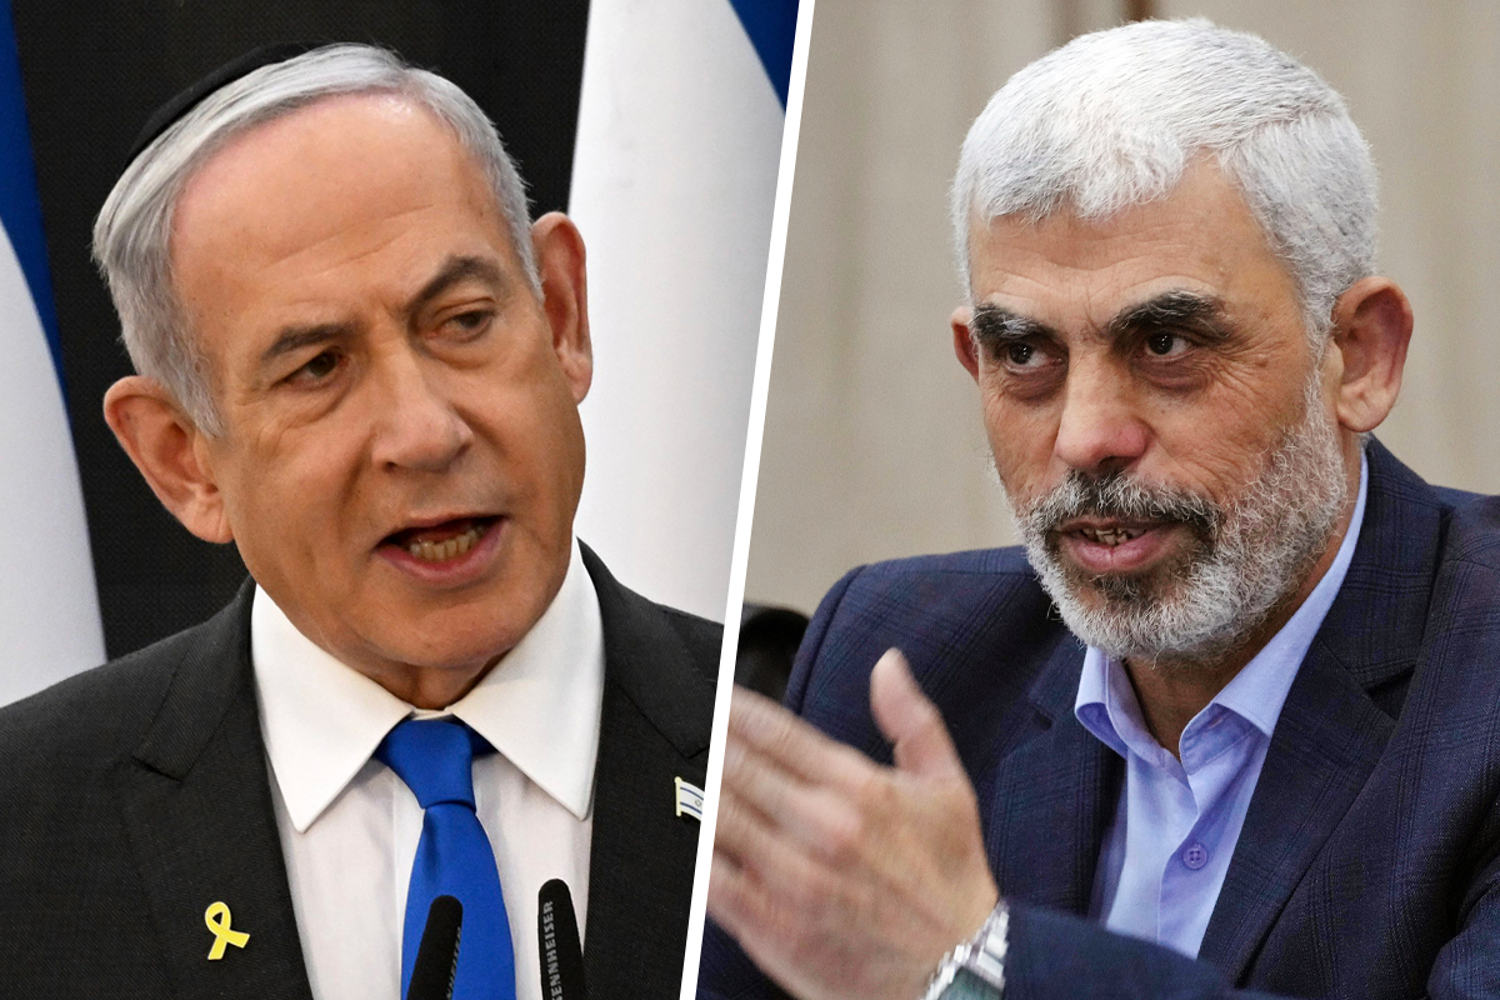 International Criminal Court prosecutor applies for arrest warrants for Netanyahu and Hamas leader Sinwar